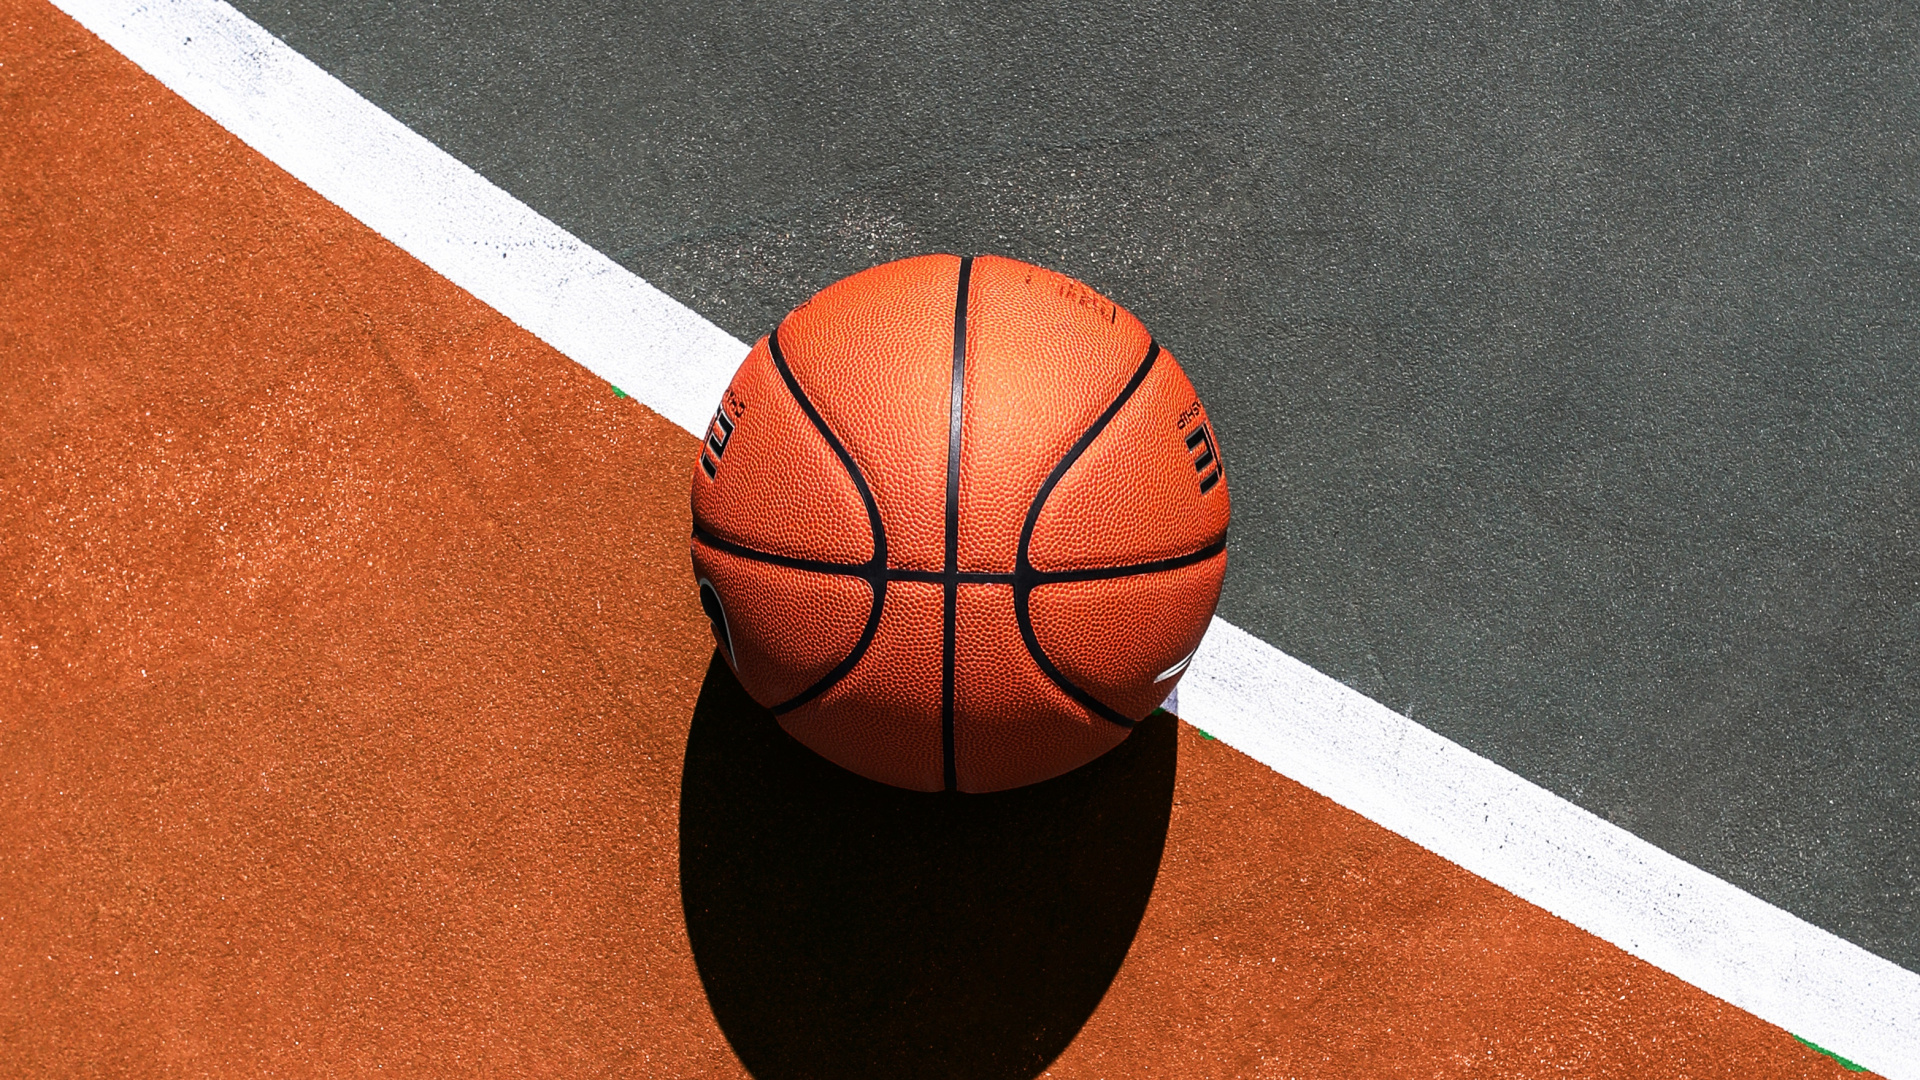 Basket-ball Sur un Terrain de Basket Bleu et Blanc. Wallpaper in 1920x1080 Resolution